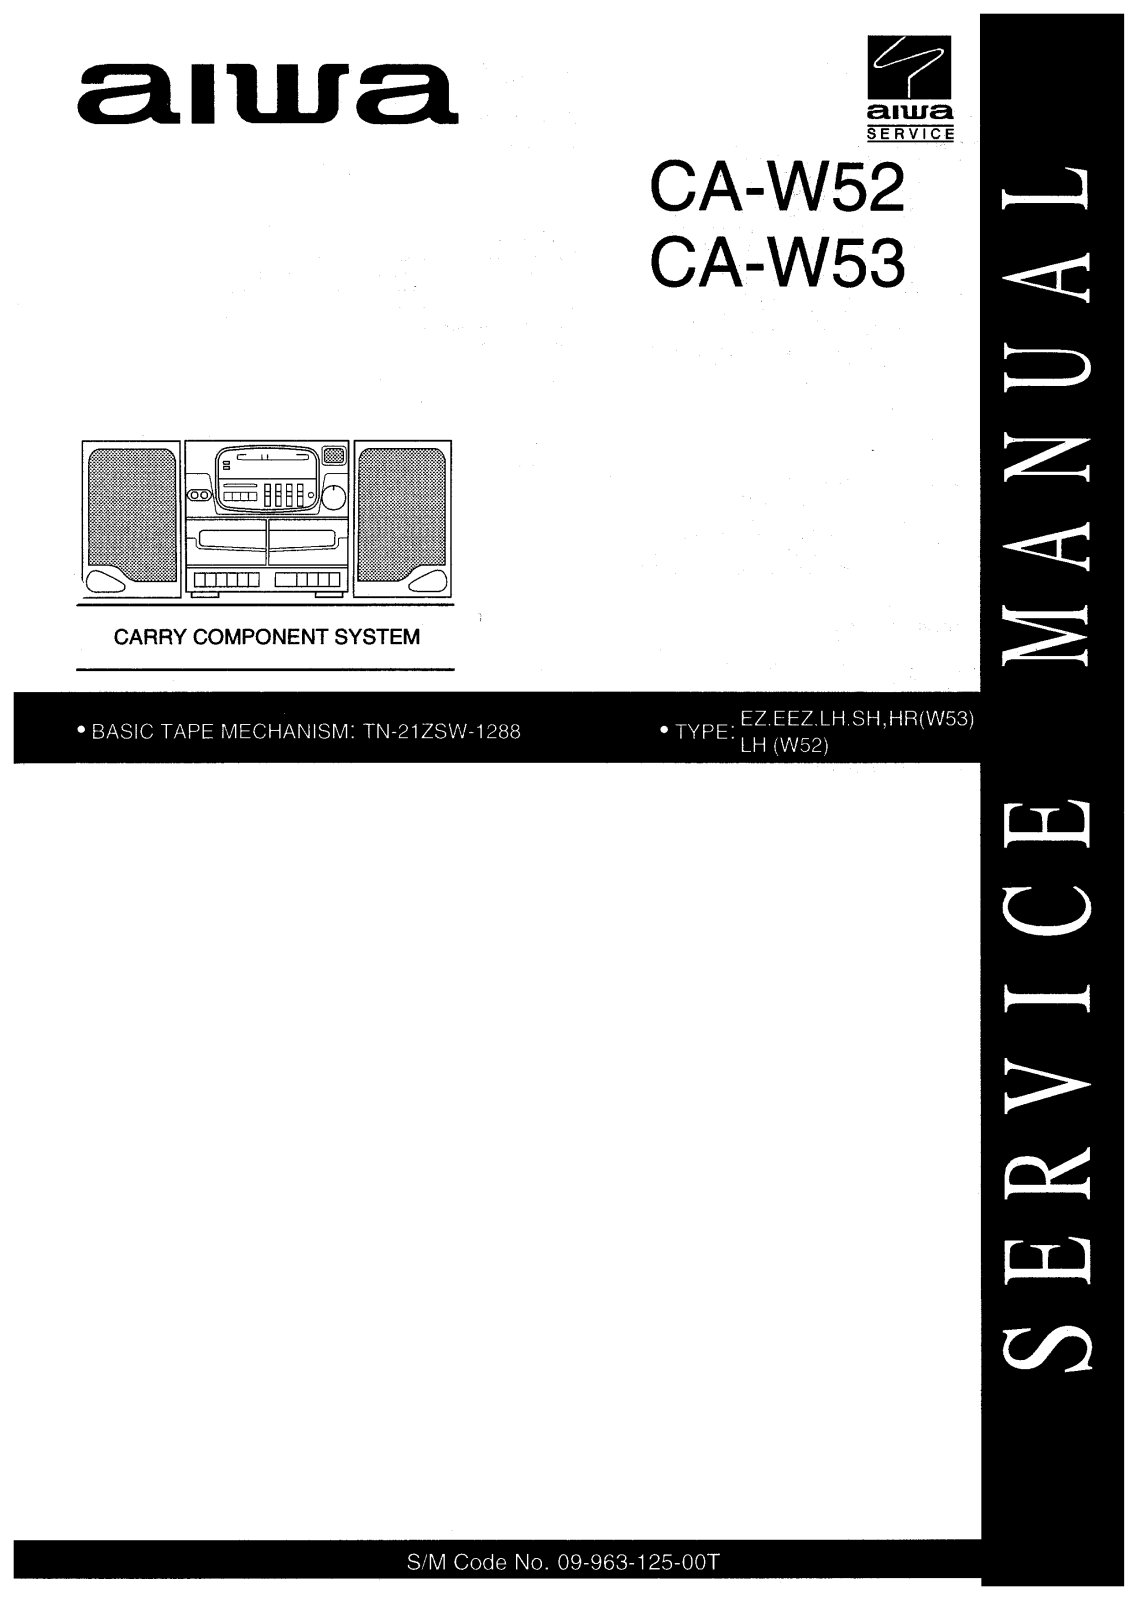 Aiwa CA-W52, CA-W53 User Manual